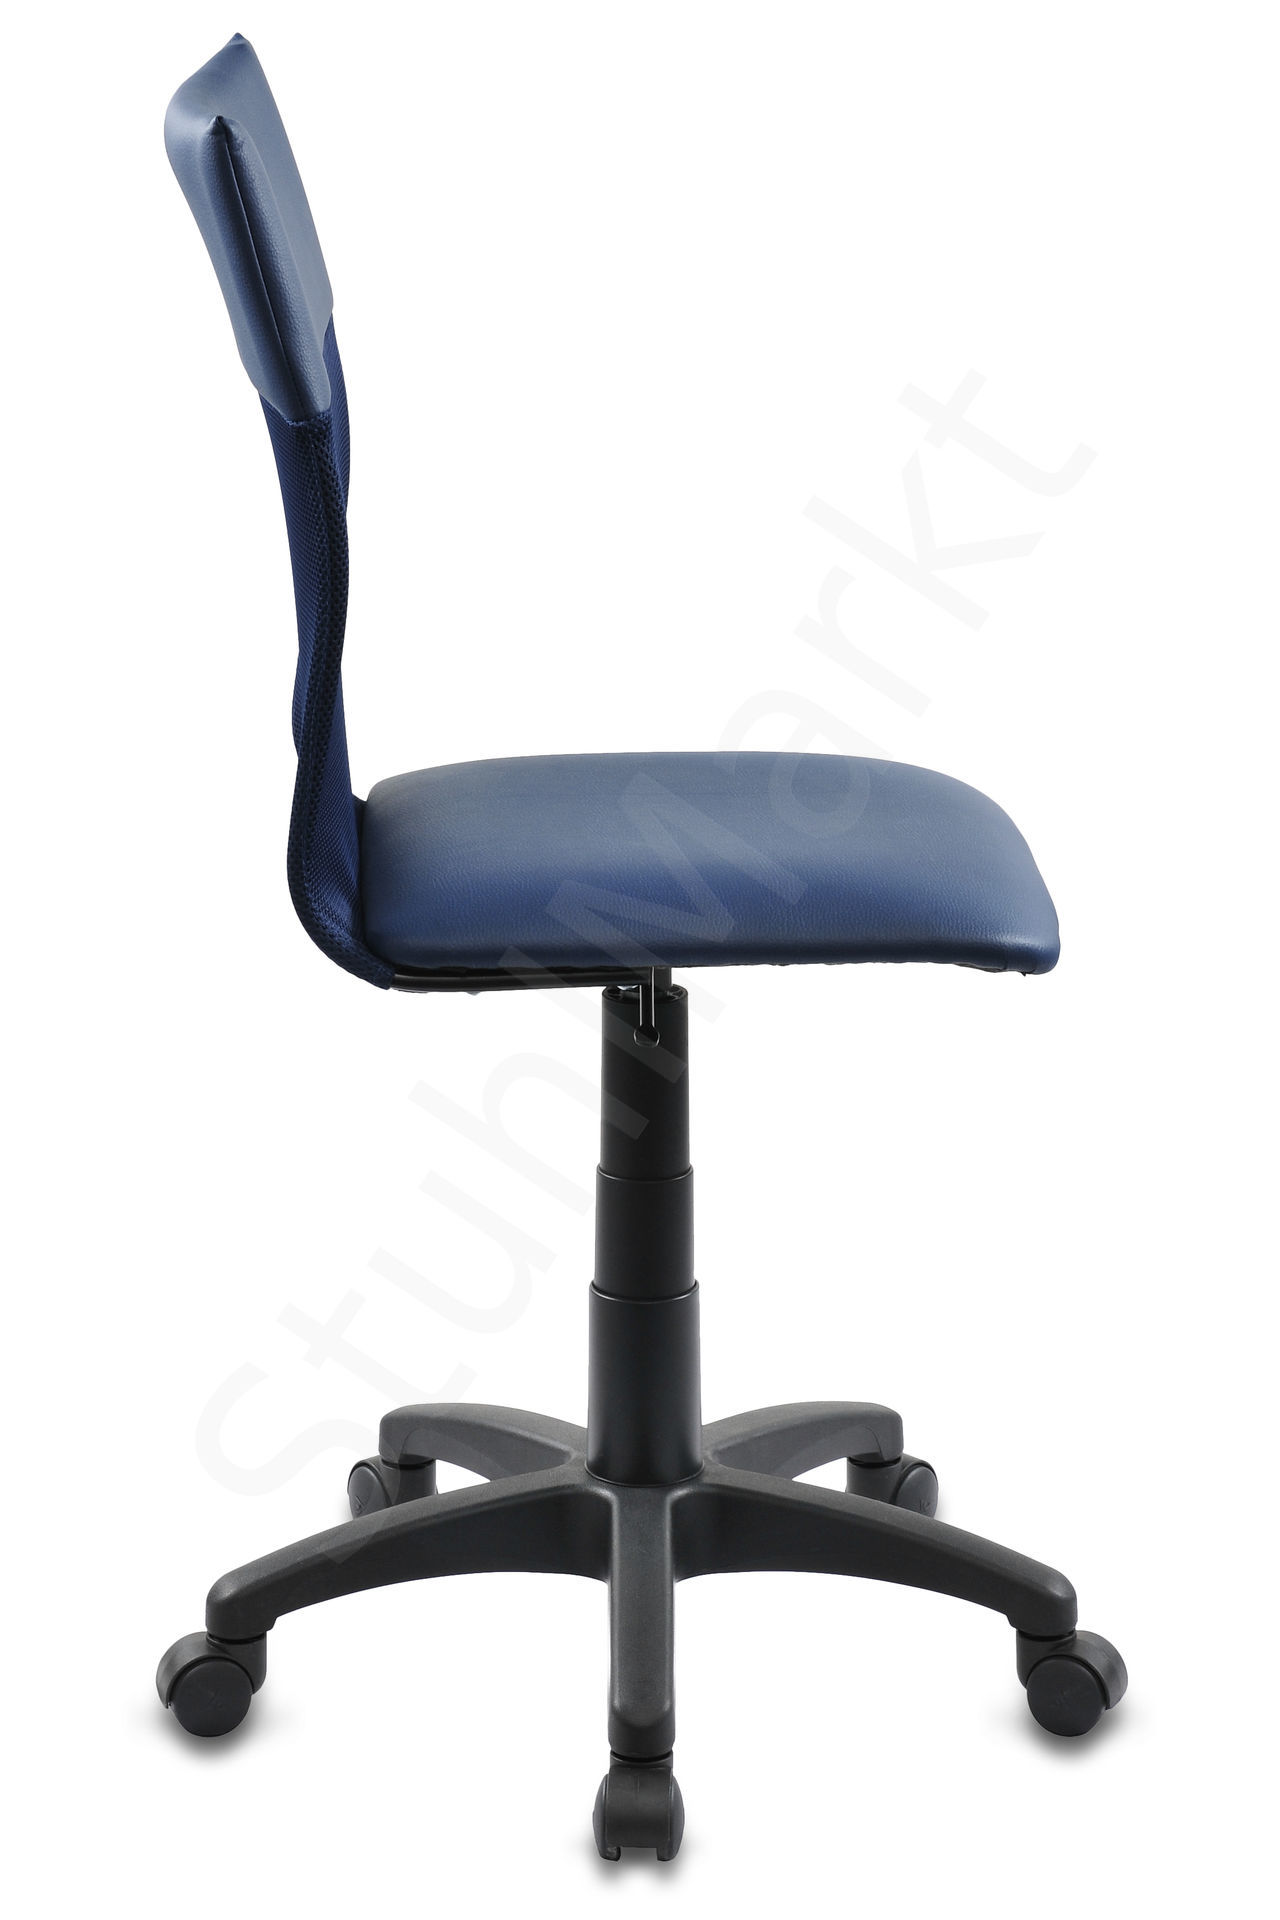  Кресло для персонала Бюрократ 399 синее 6215